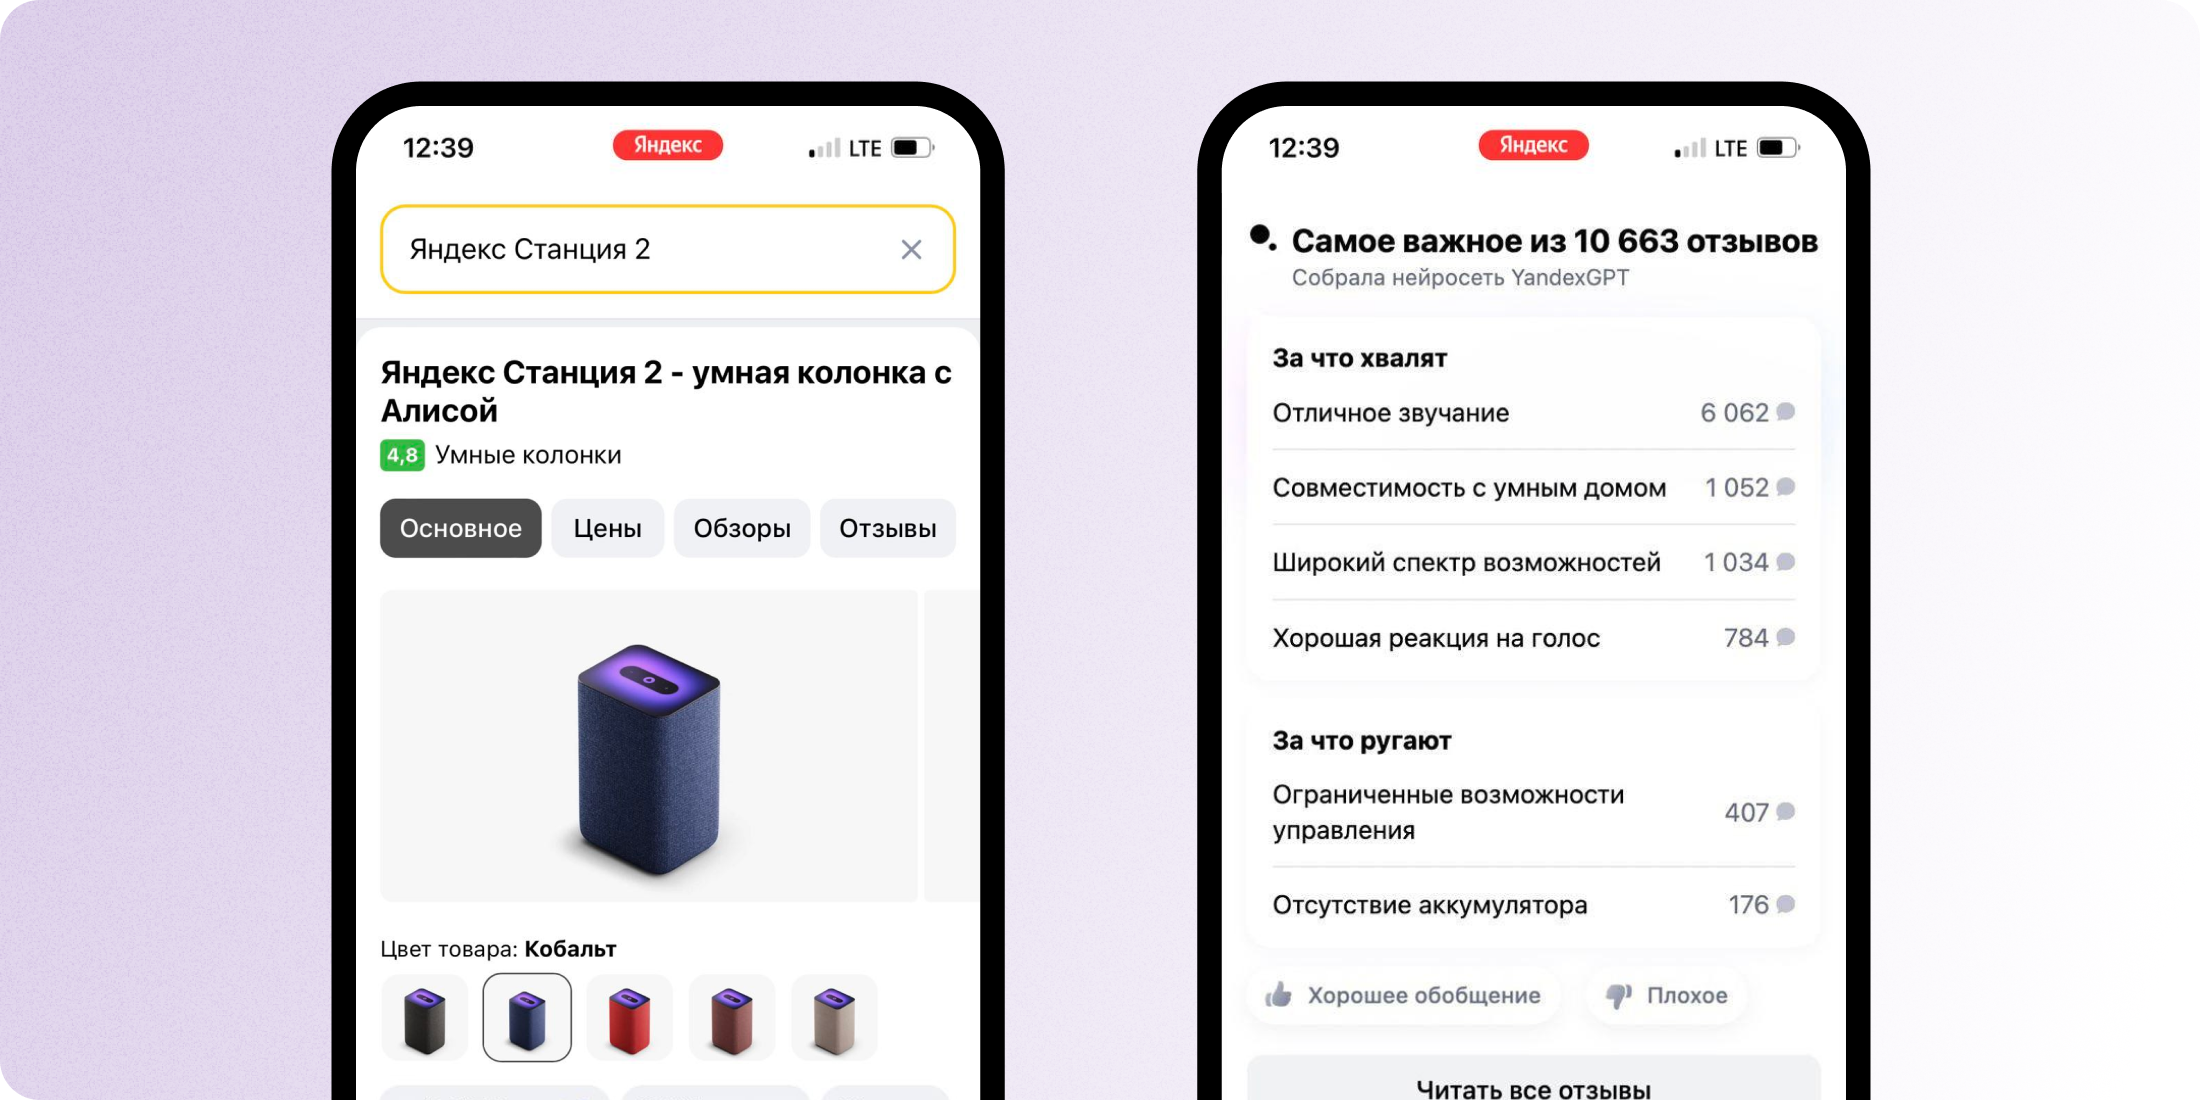 Раздел с отзывами от YandexGPT